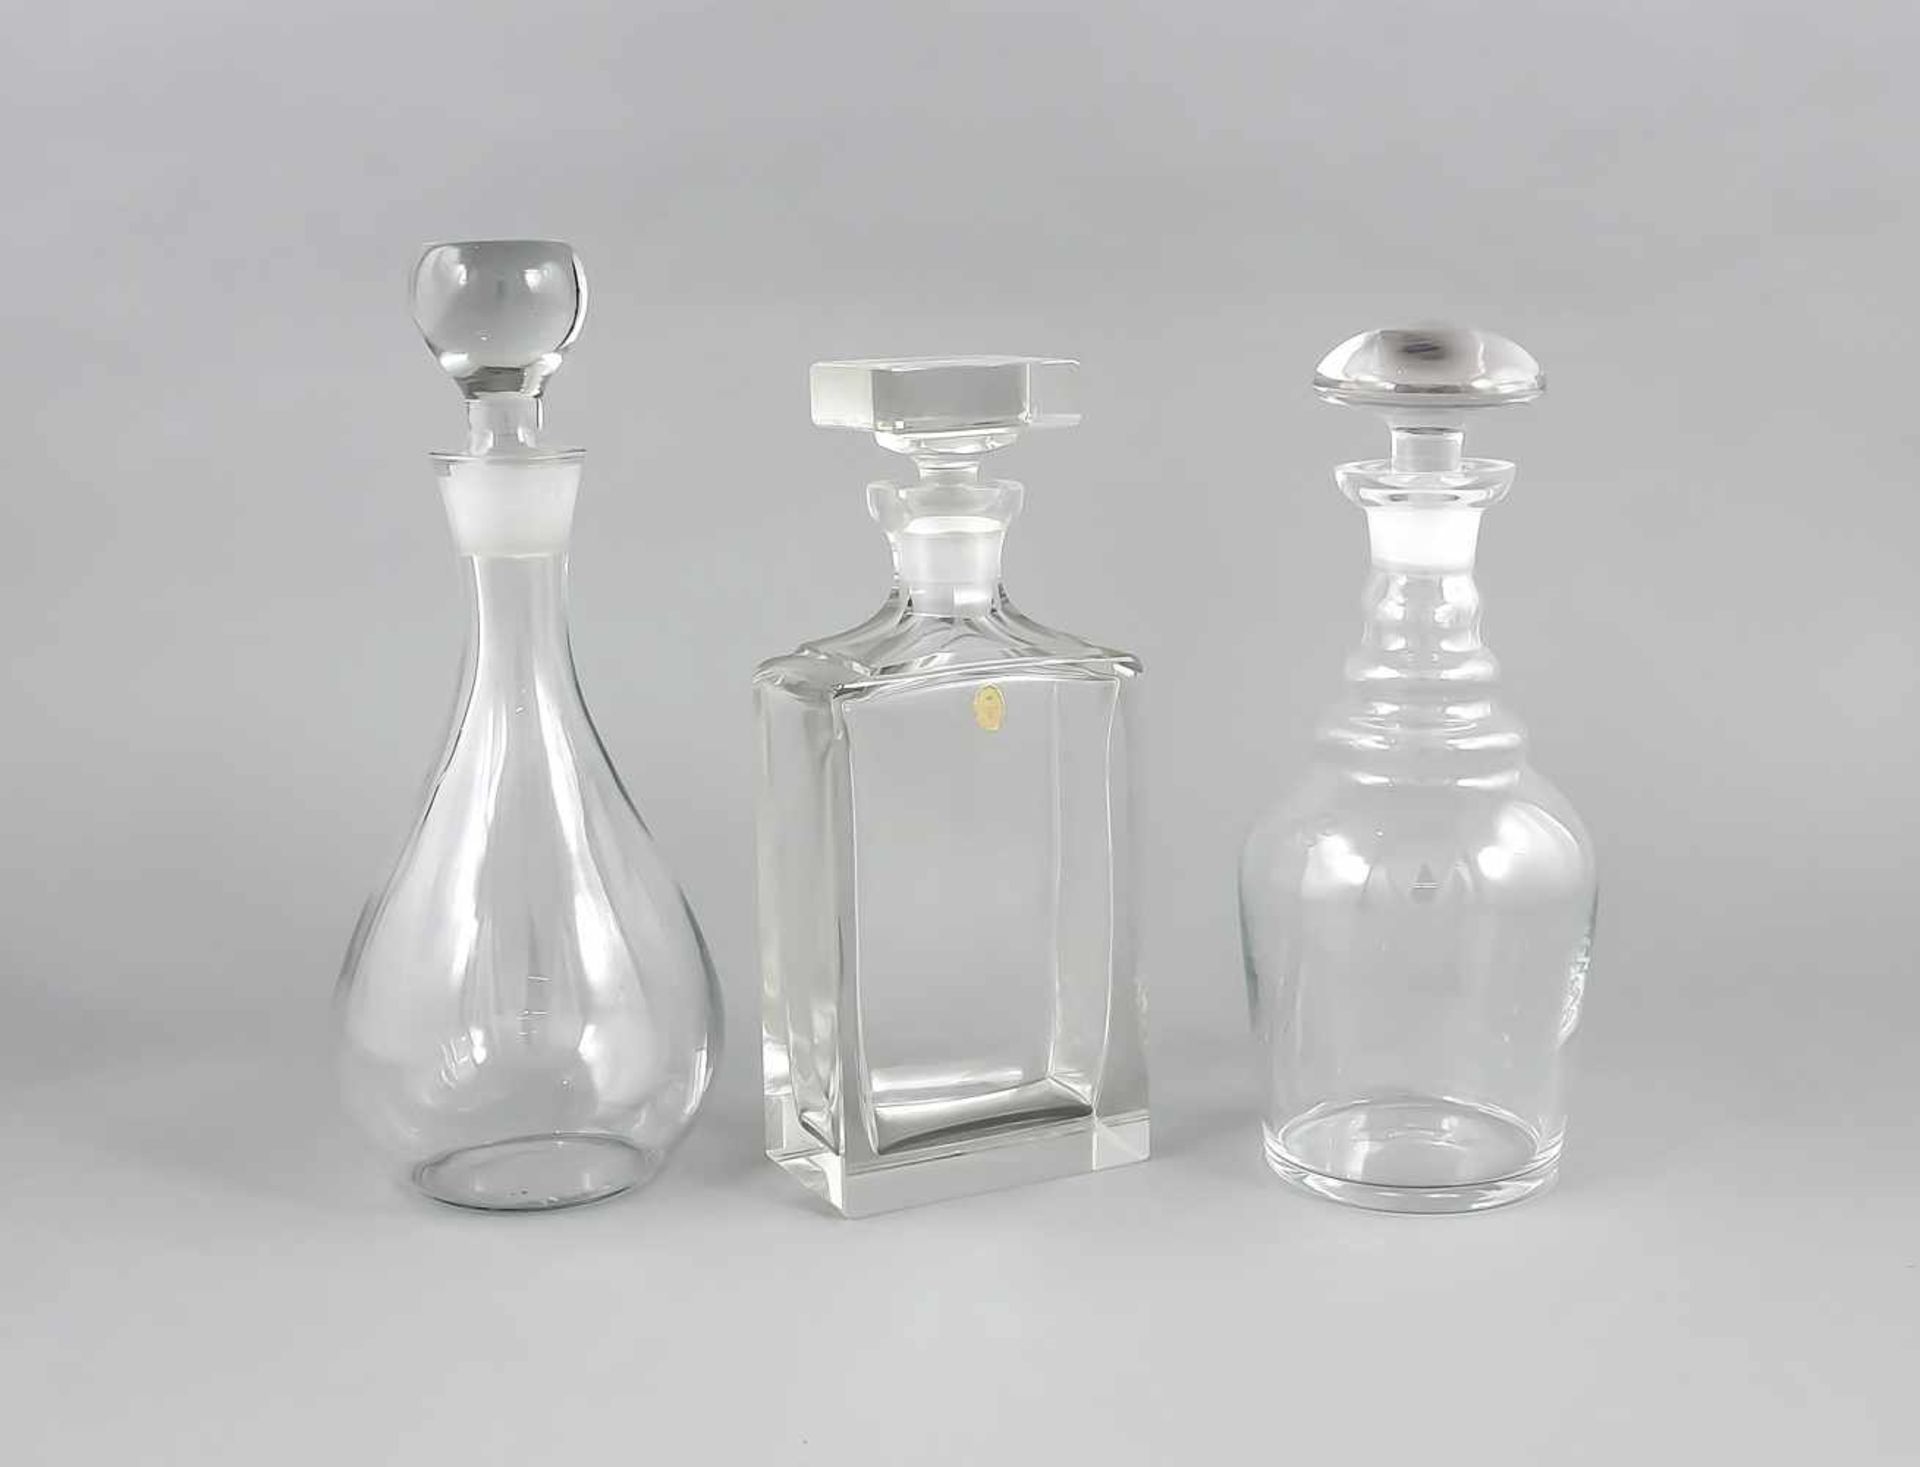 Drei Karaffen, 20. Jh., unterschiedliche Formen und Größen, klares Glas, H. bis 30 cmThree